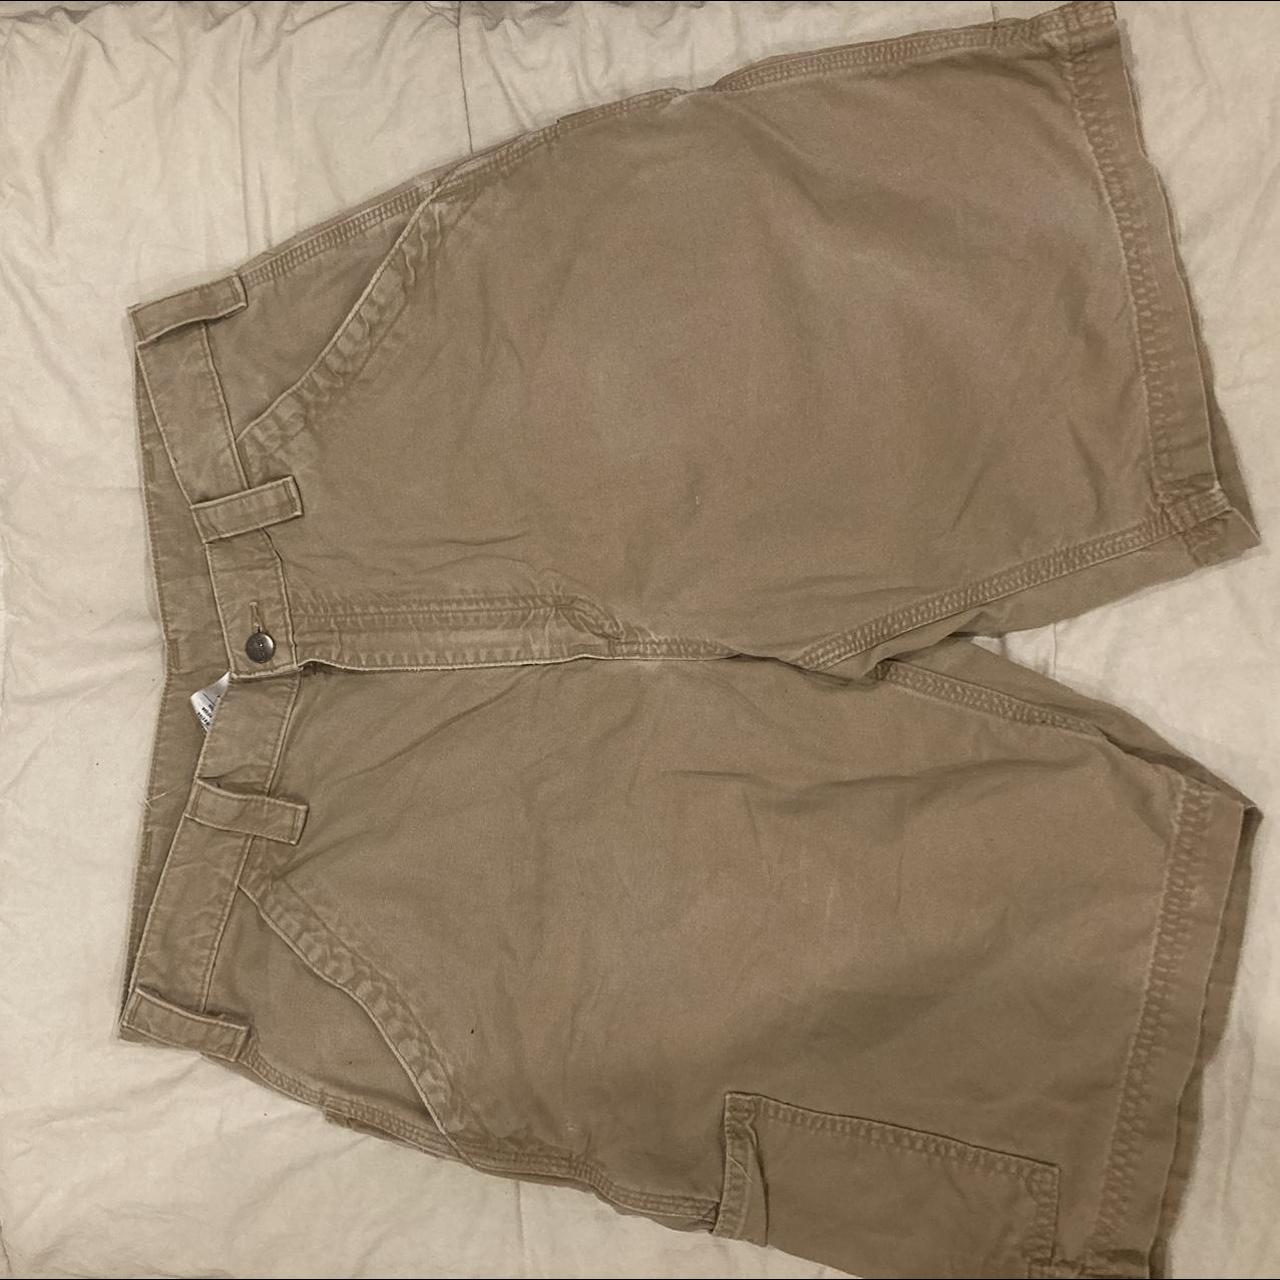 Size 34 Original Fit Light Brown Carhartt Cargo Shorts - Depop